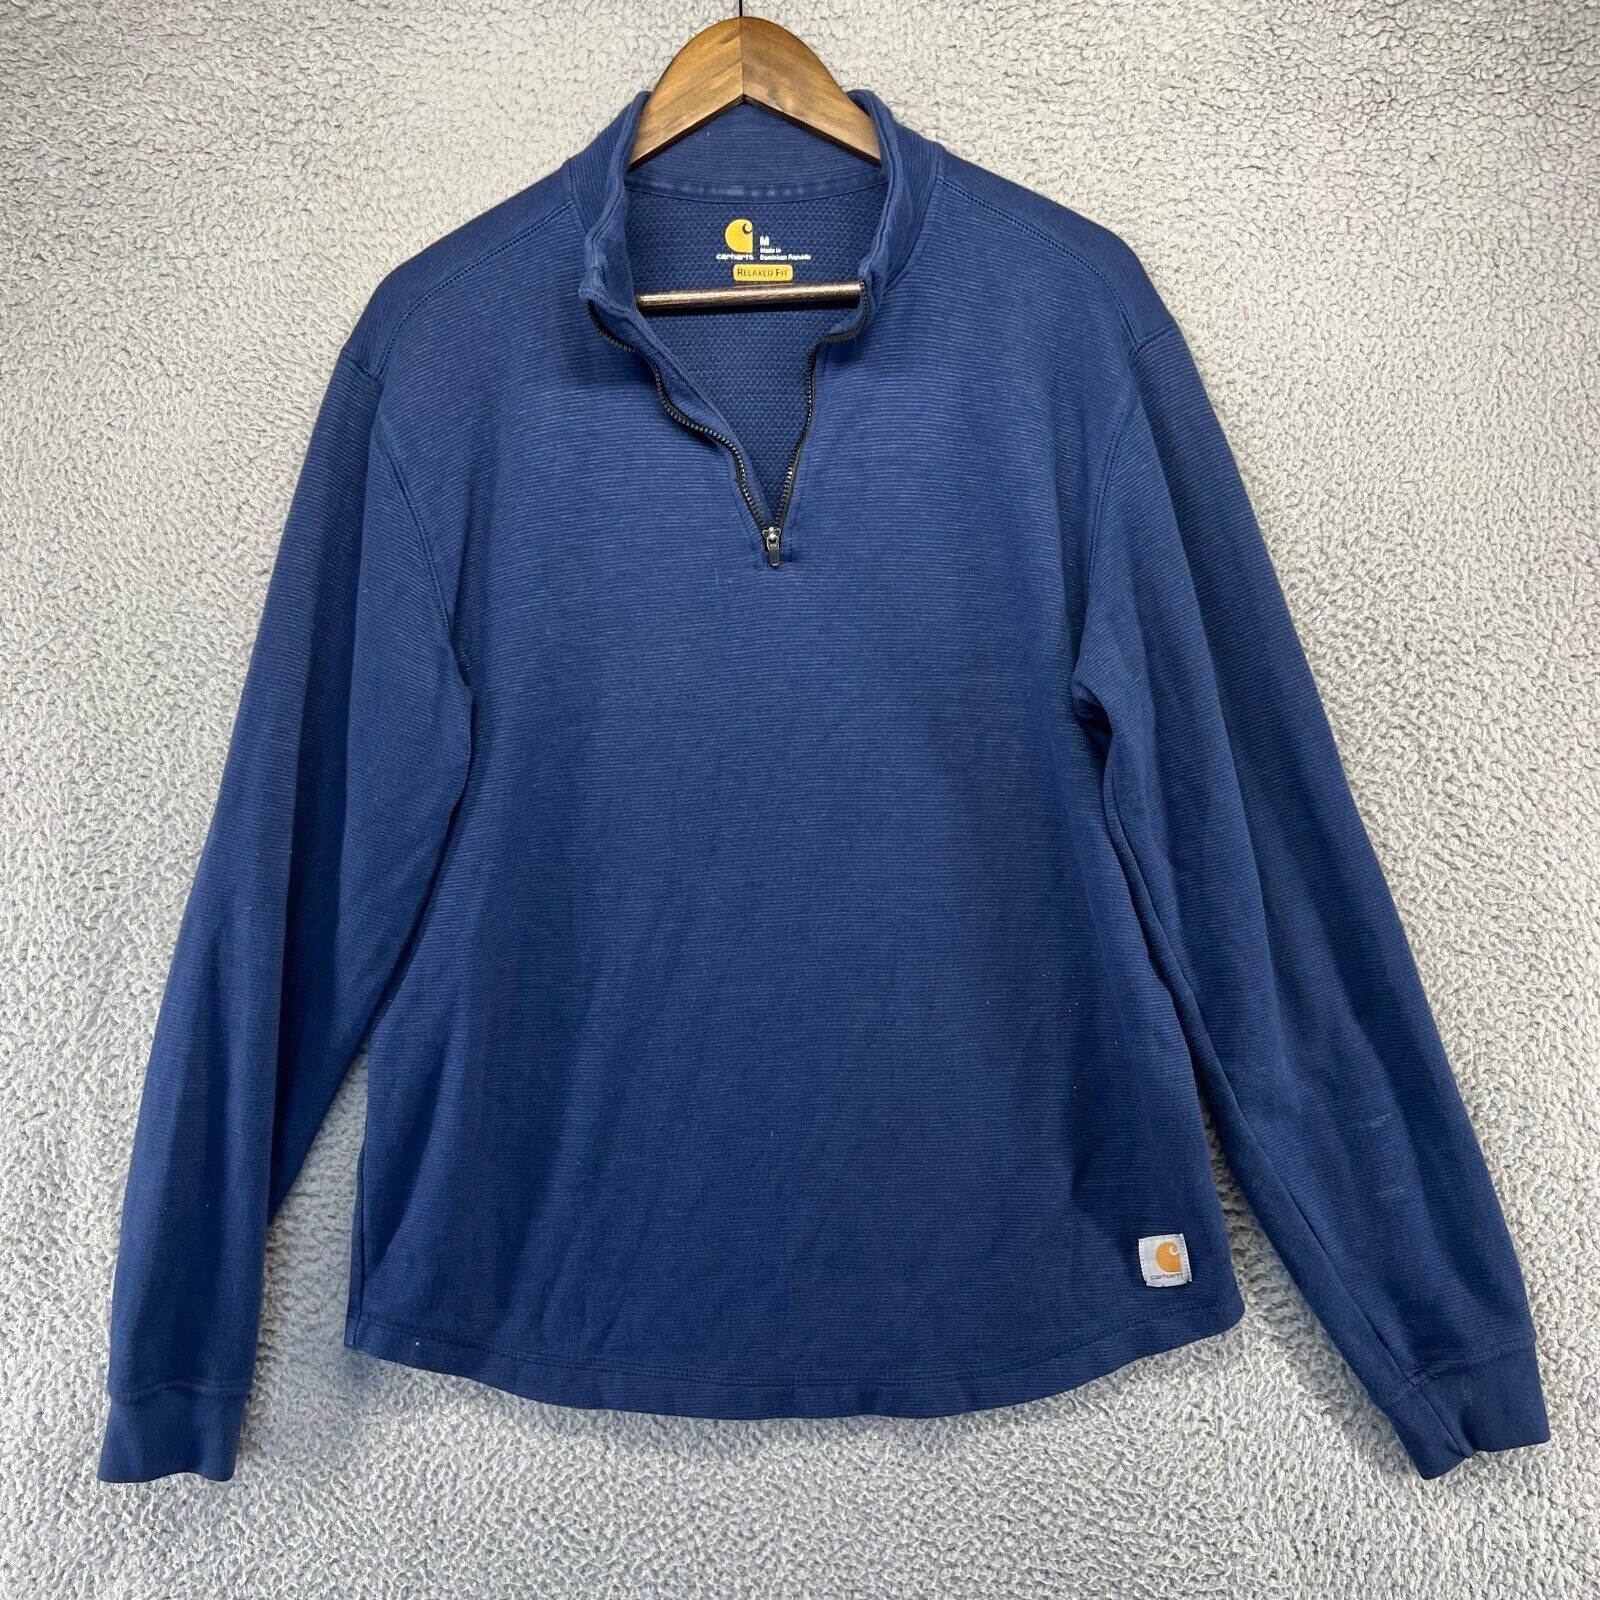 Carhartt Carhartt Sweater Men's Medium Blue 1/4 Zip Pullover Relaxed ...